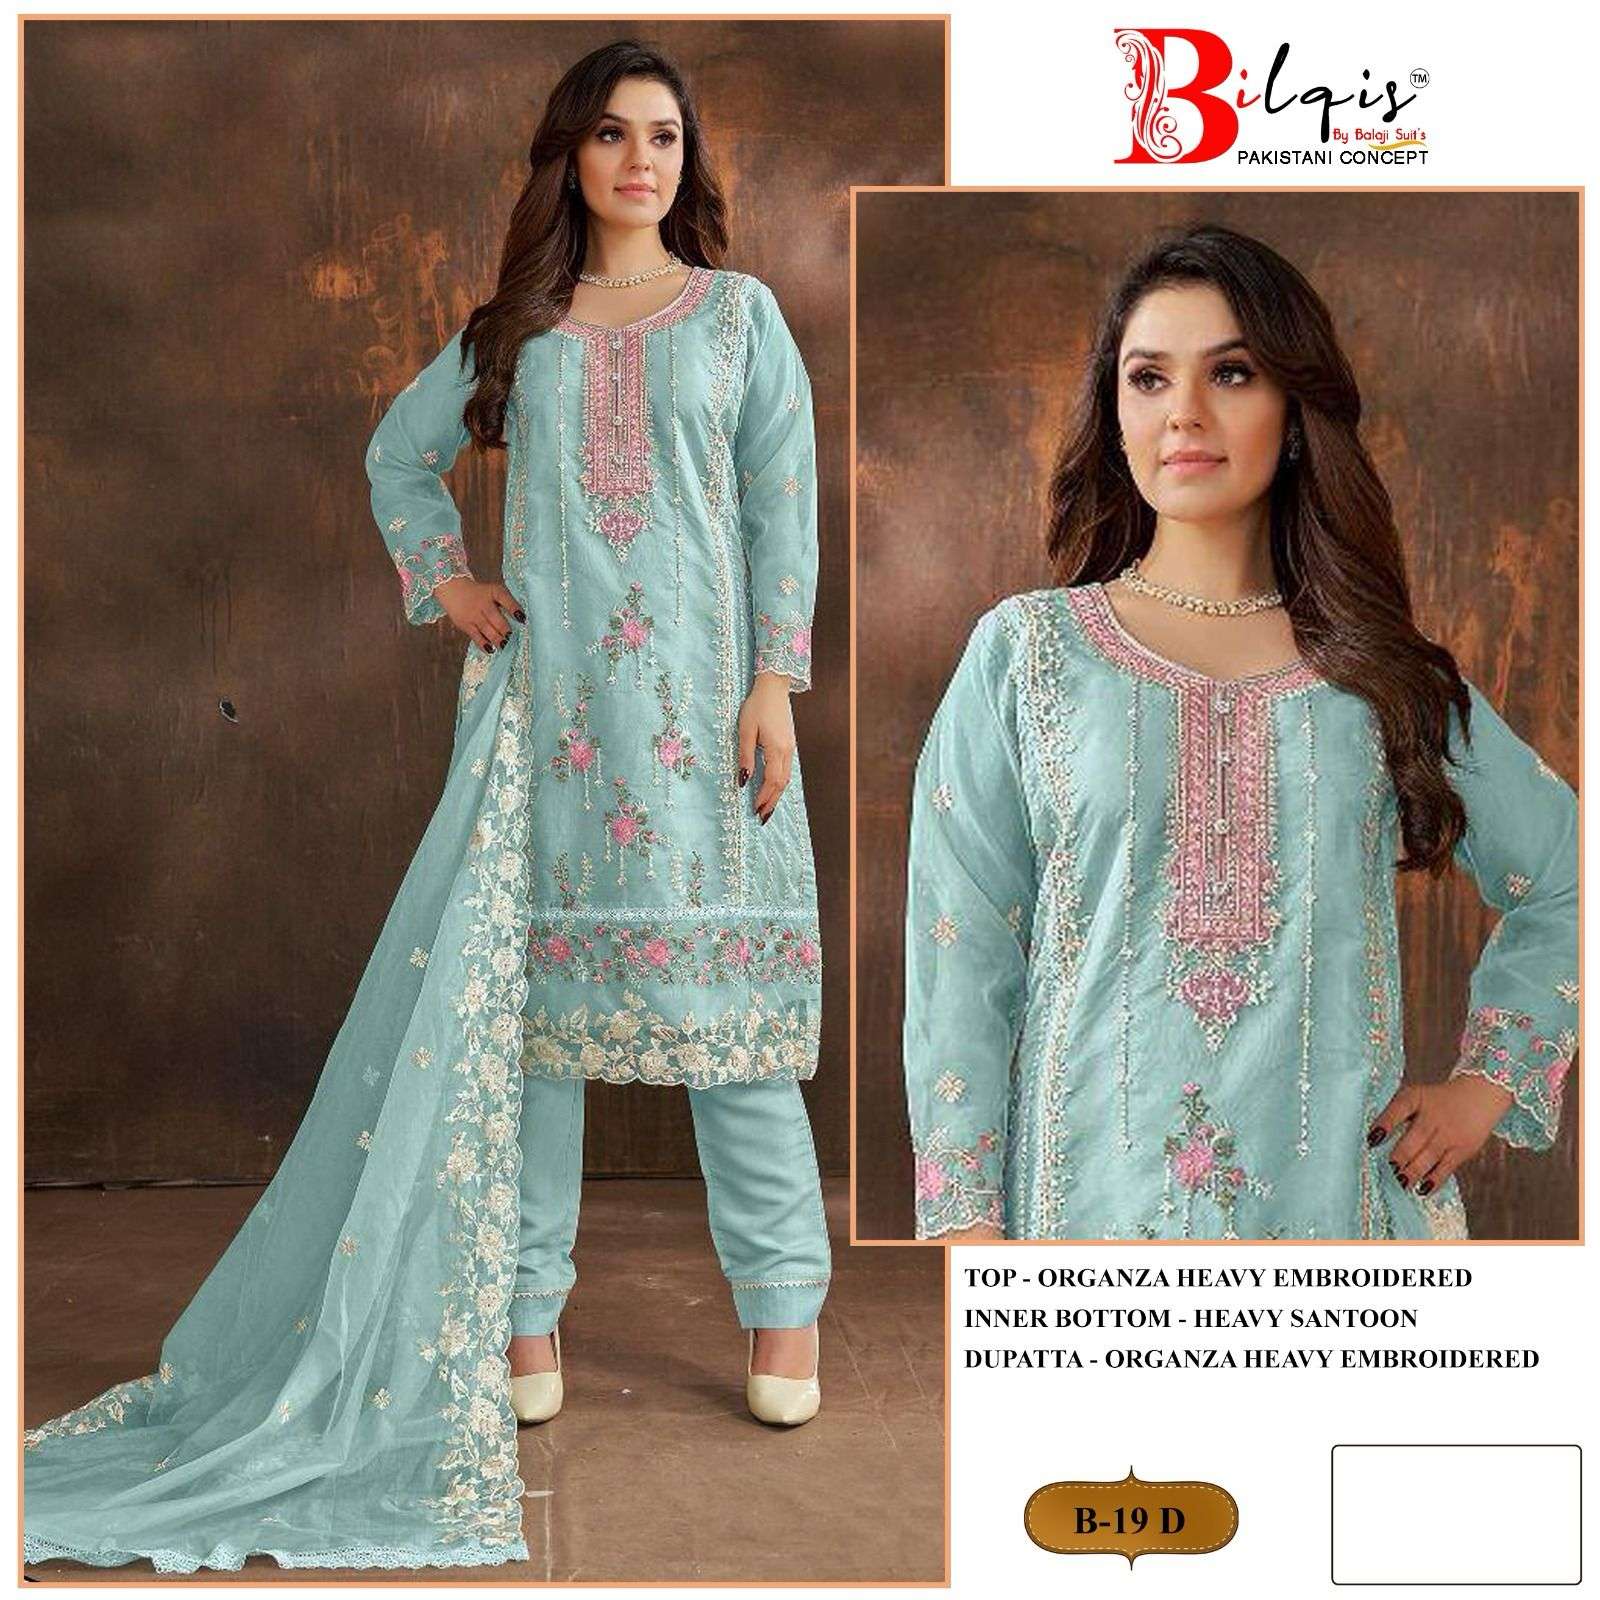 Bilqis B 19 A To D Organza Pakistani Suits Wholesale catalog